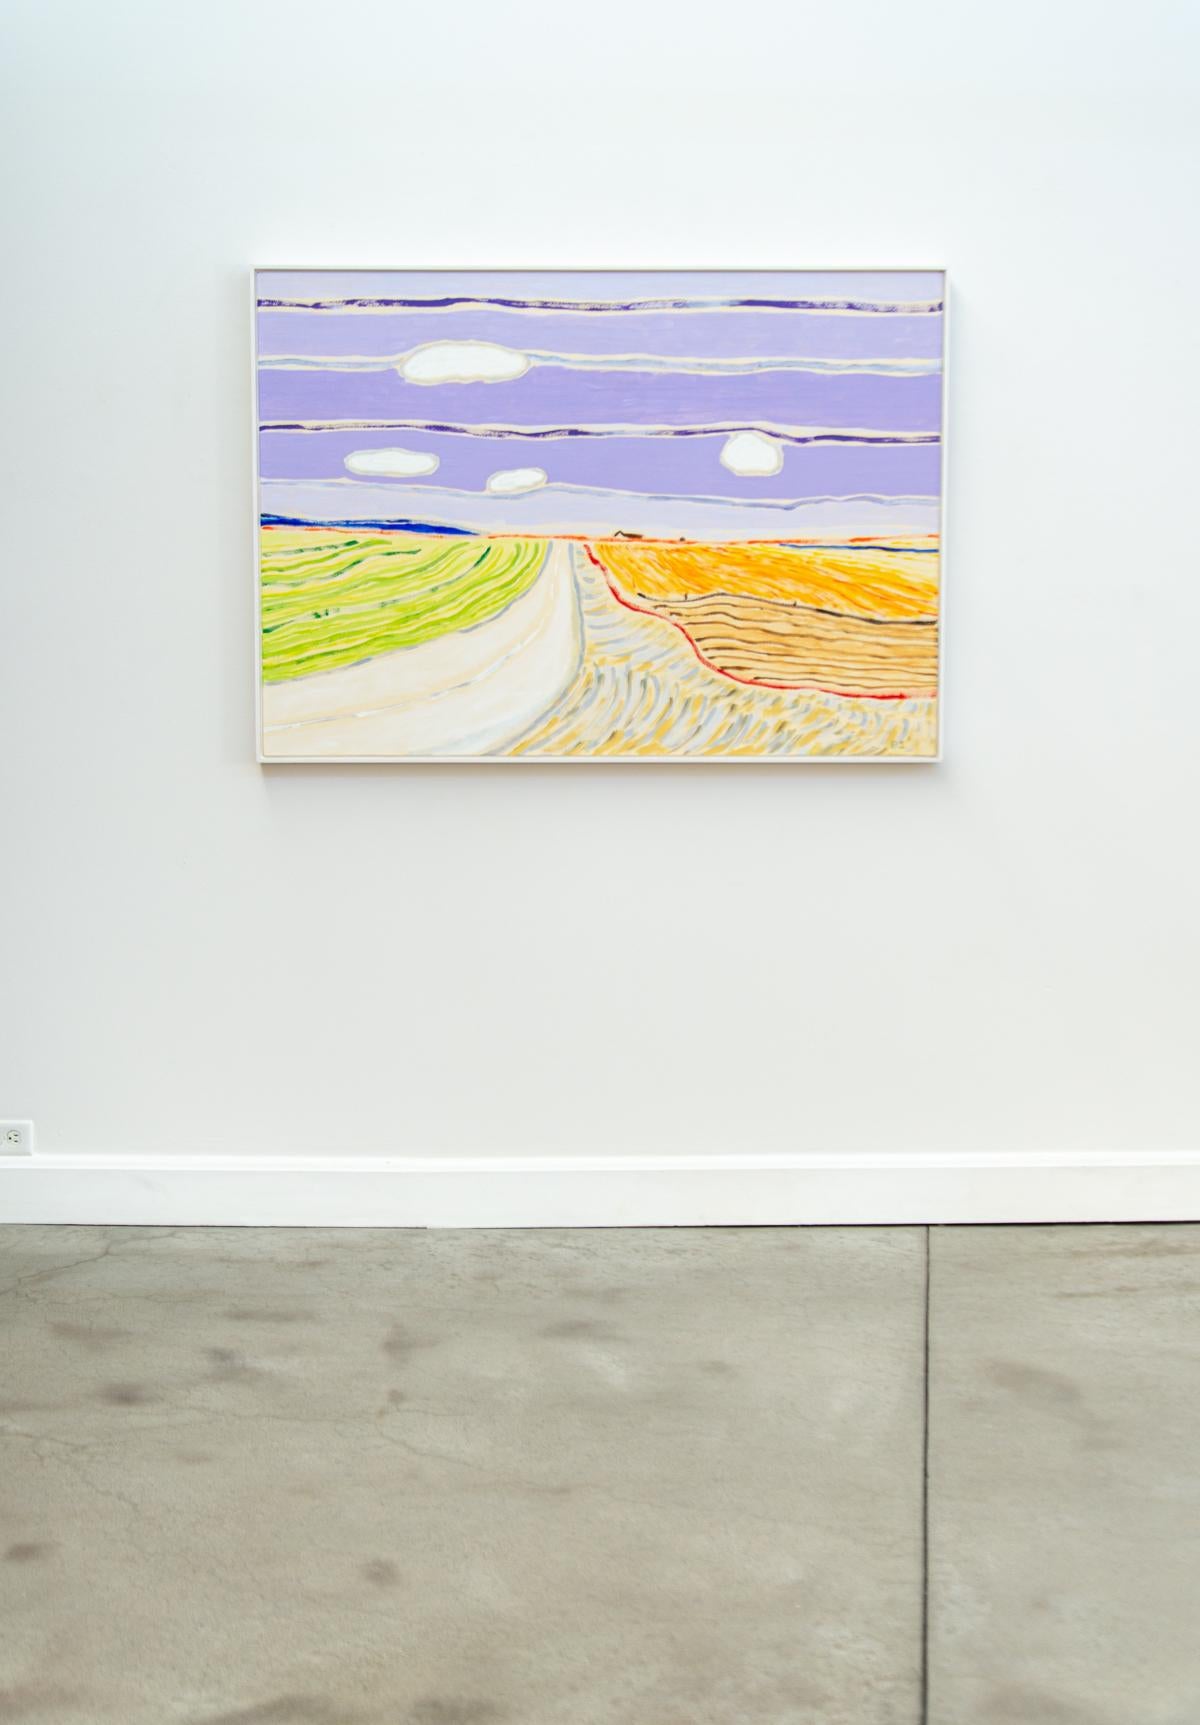 Crops - grand paysage abstrait, brillant, coloré, acrylique sur toile - Contemporain Painting par Pat Service